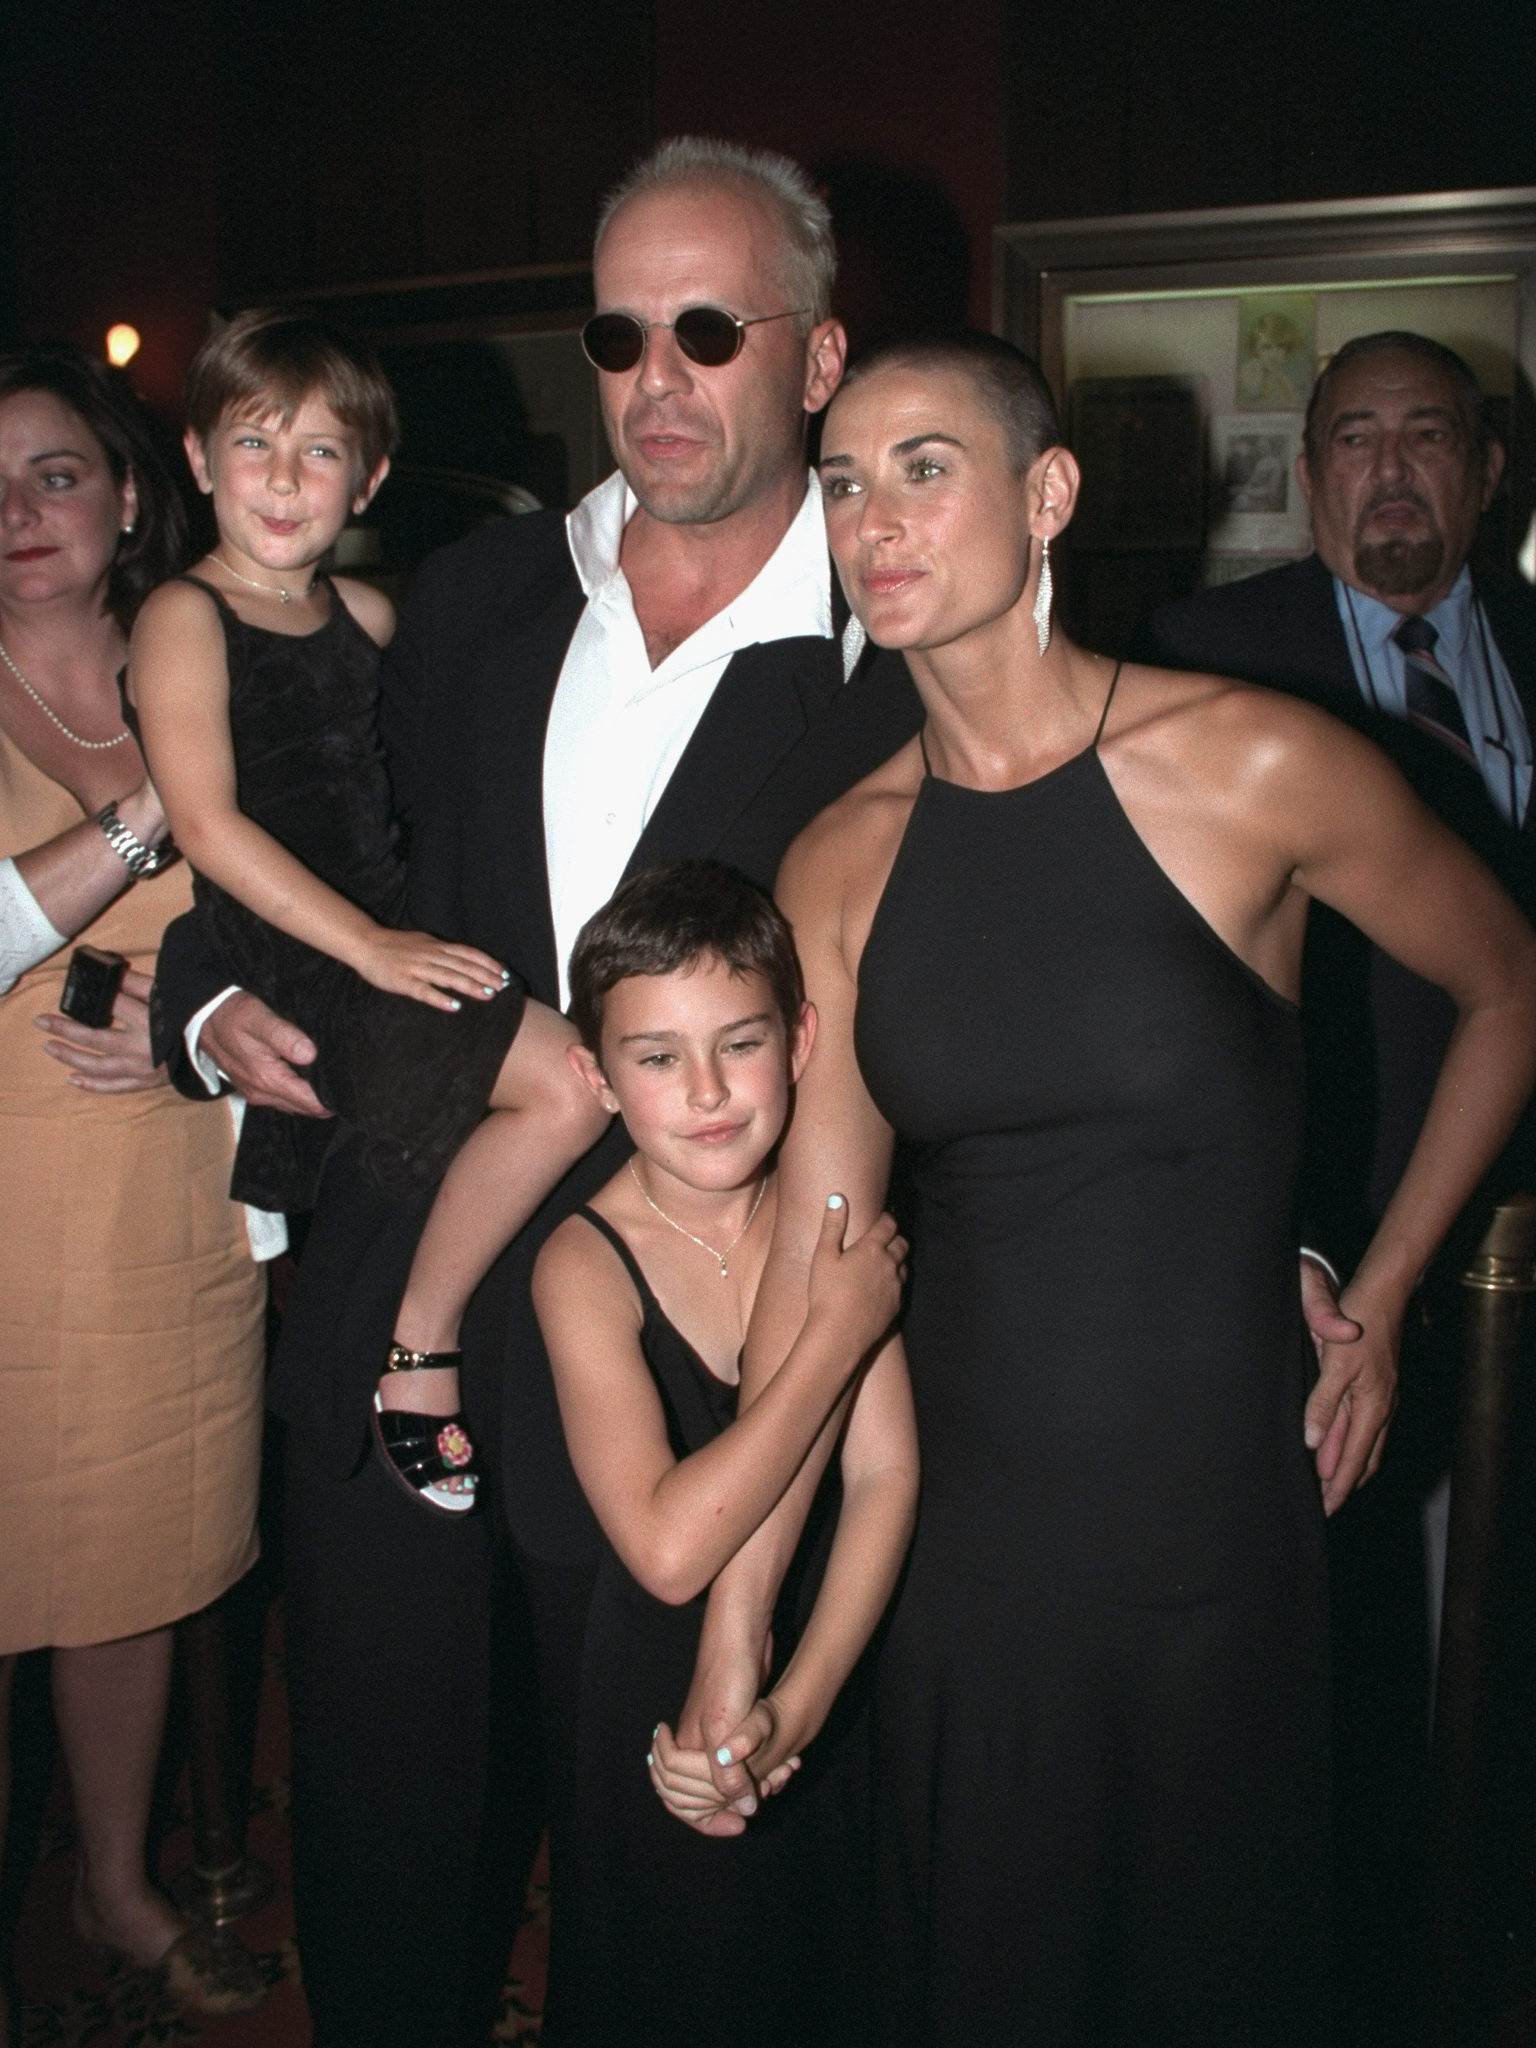 Demi Moore y Bruce Willis con sus hijas, Rumer y Scout, en el estreno de la película "Striptease" en el Teatro Ziegfeld, el 23 de junio de 1996. | Fuente: Getty Images